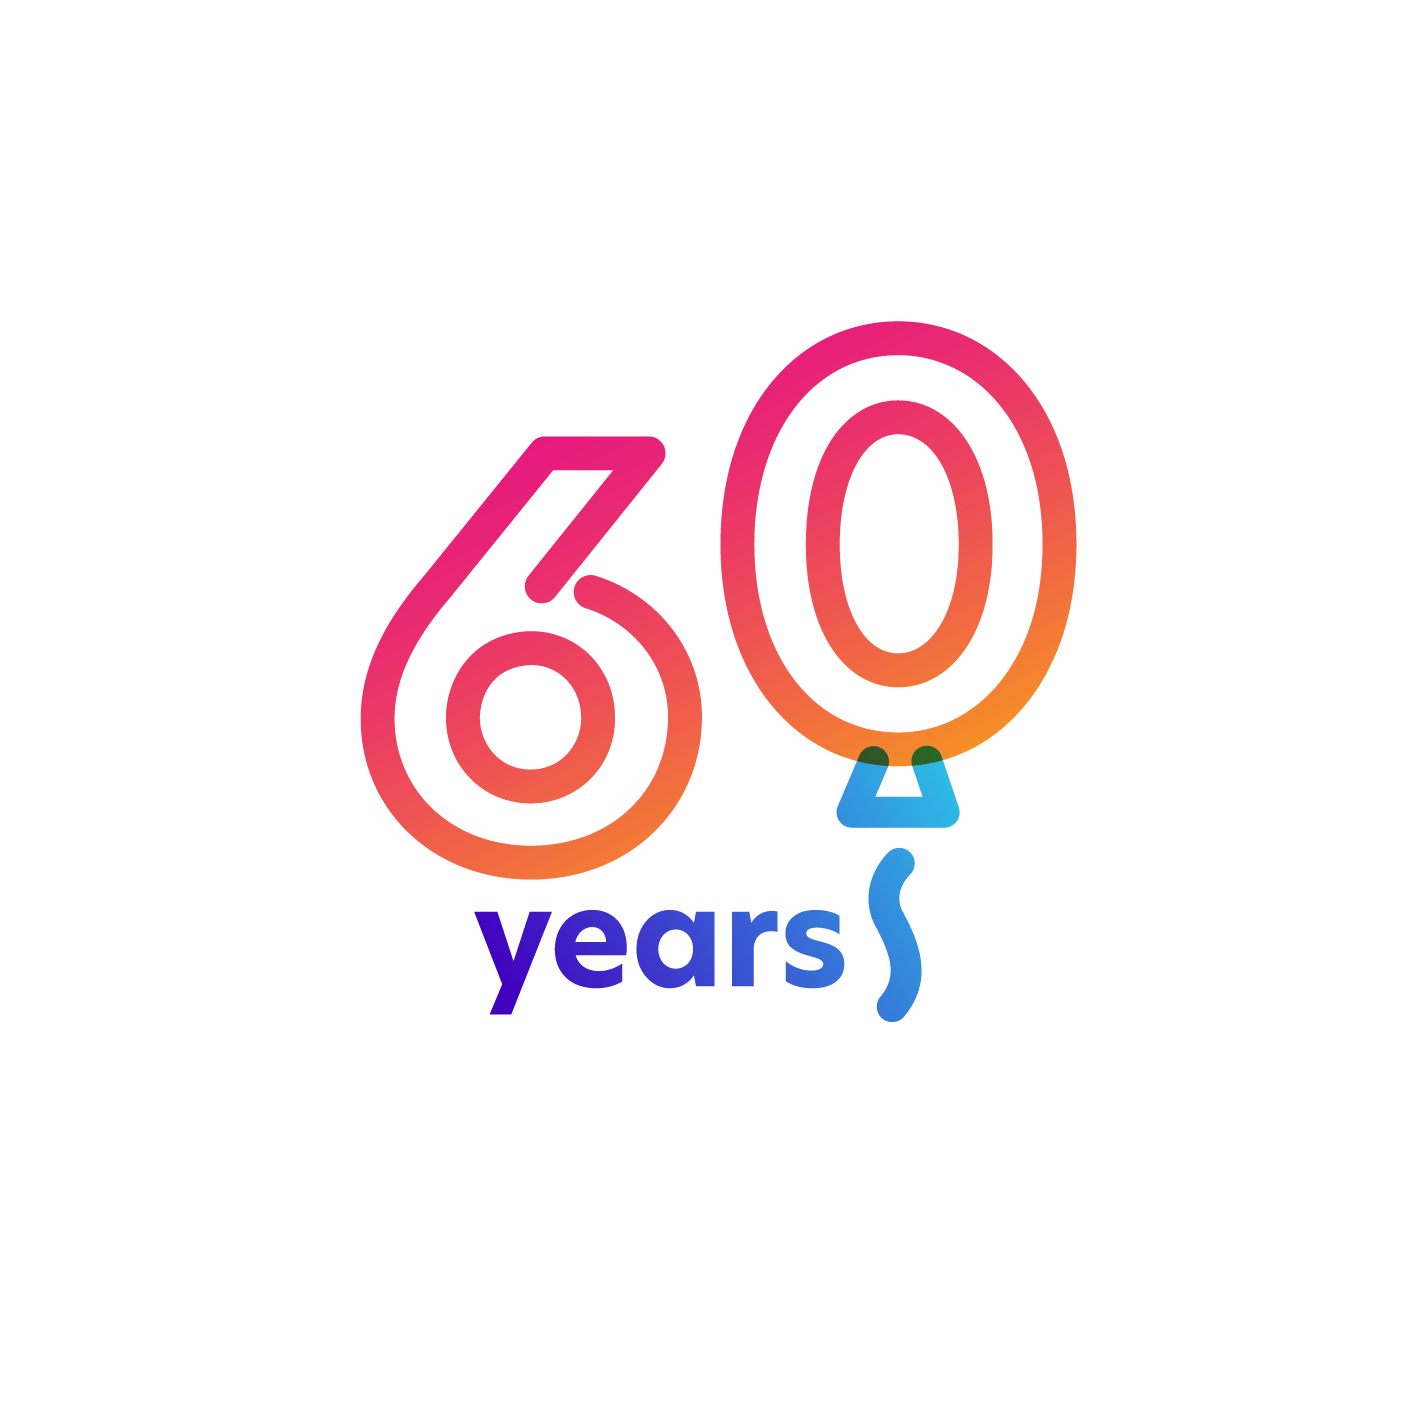 60th anniversary icon